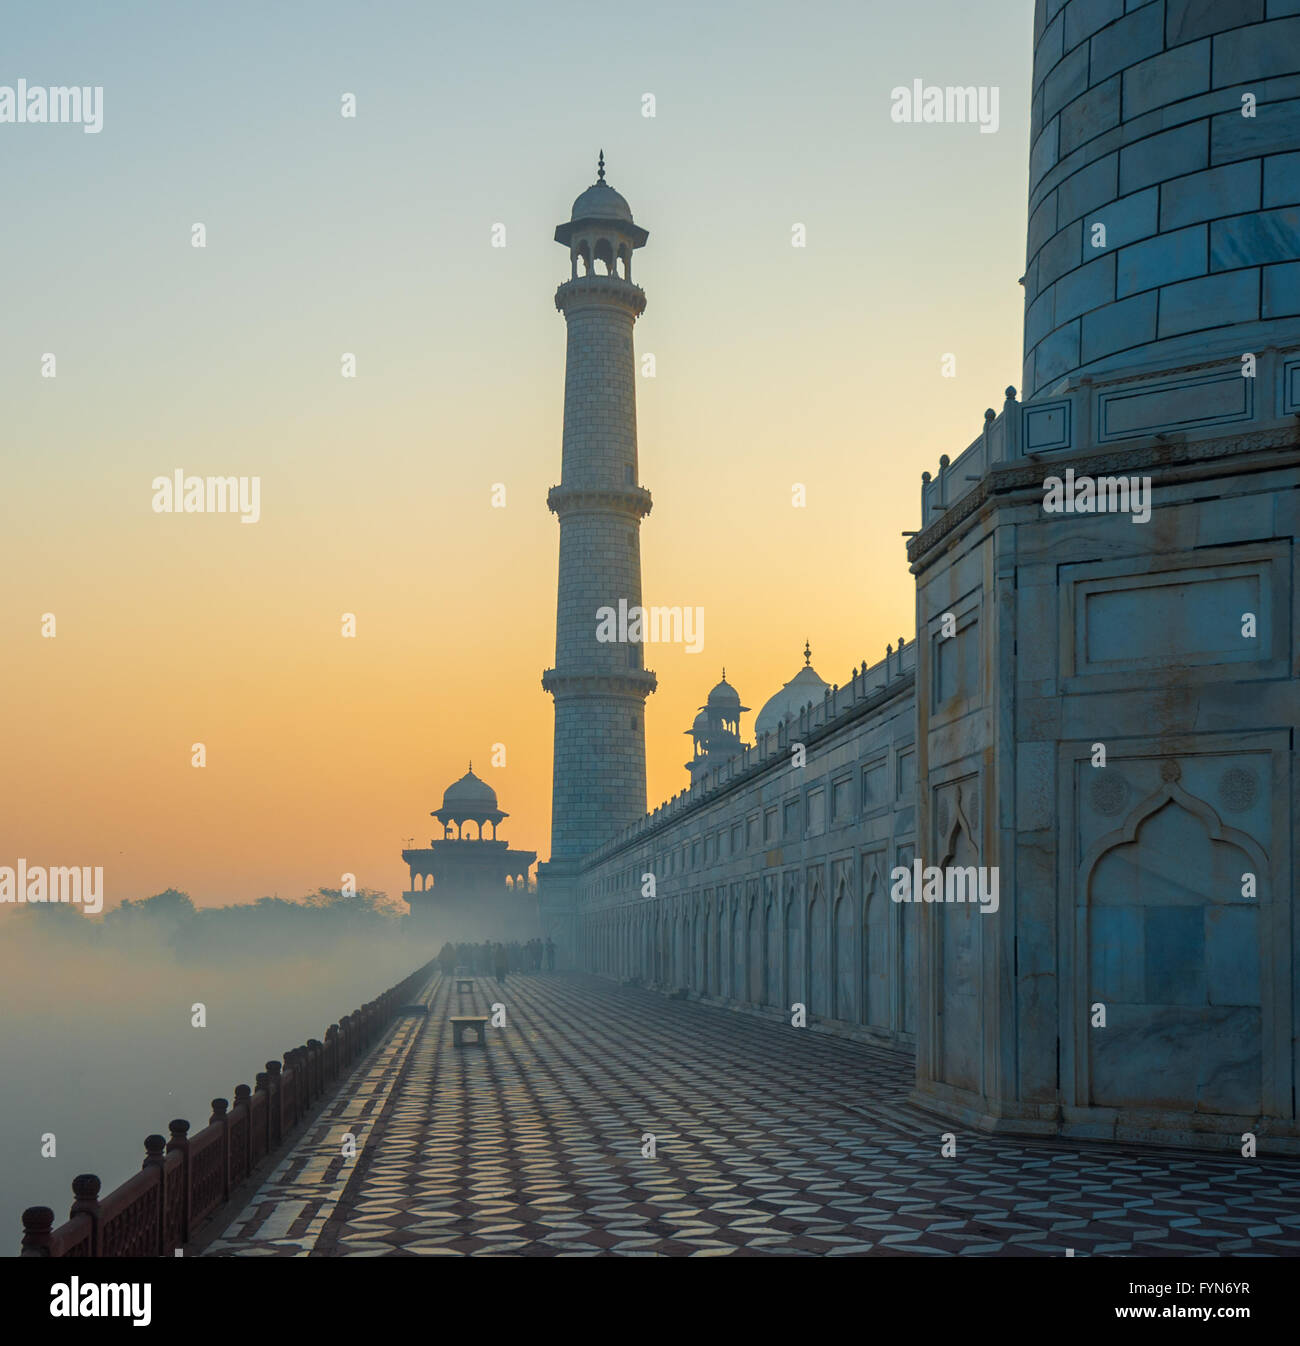 Taj Mahal au lever du soleil, Agra, Inde Banque D'Images